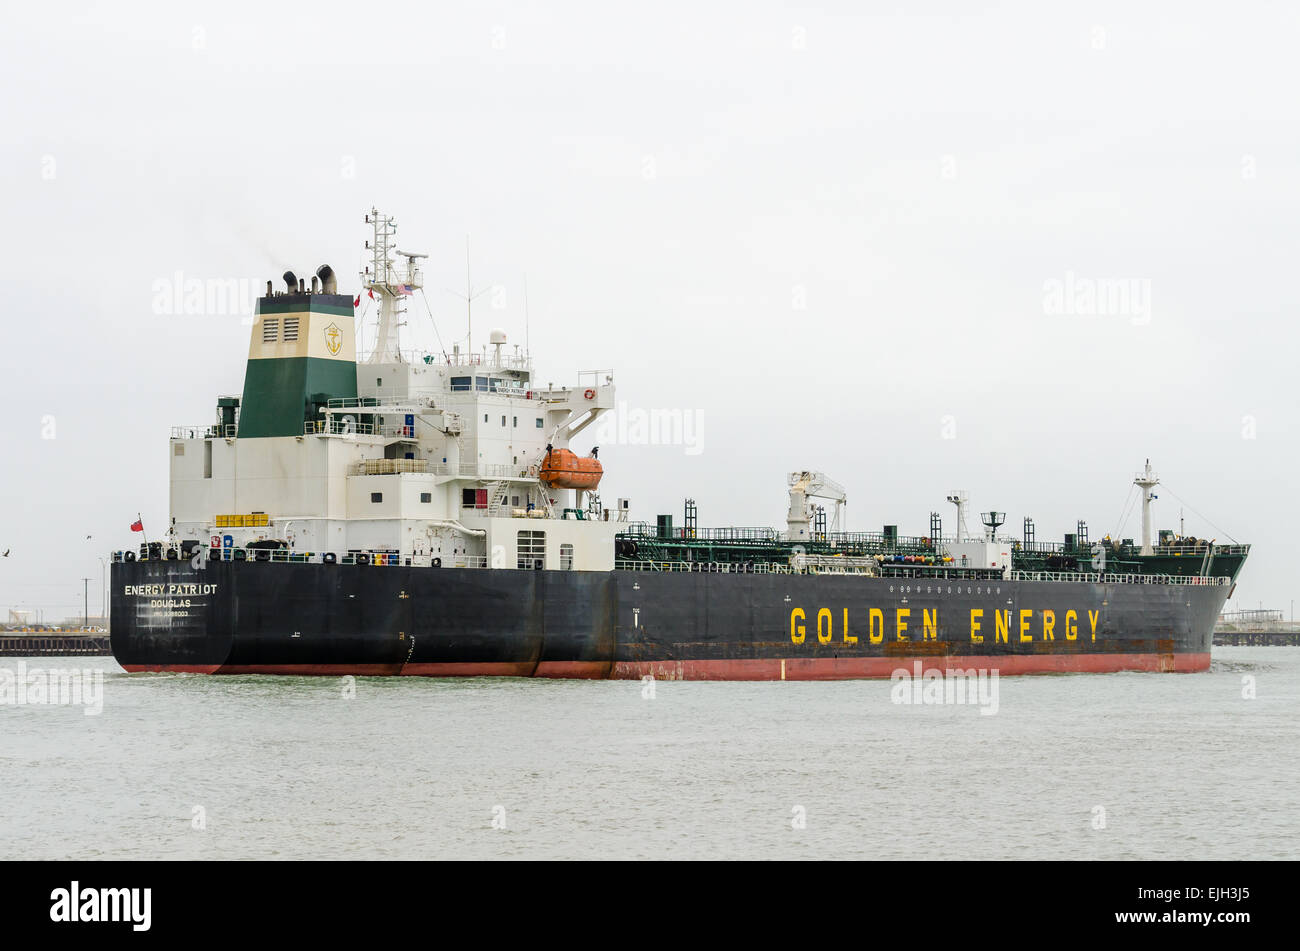 ENERGY PATRIOT OIL/CHEMICAL TANKER Gross Tonnage: 29605 Summer DWT: 46583 t Build: 2008 Flag: ISLE OF MAN (UK) Home port: DOUGLA Stock Photo